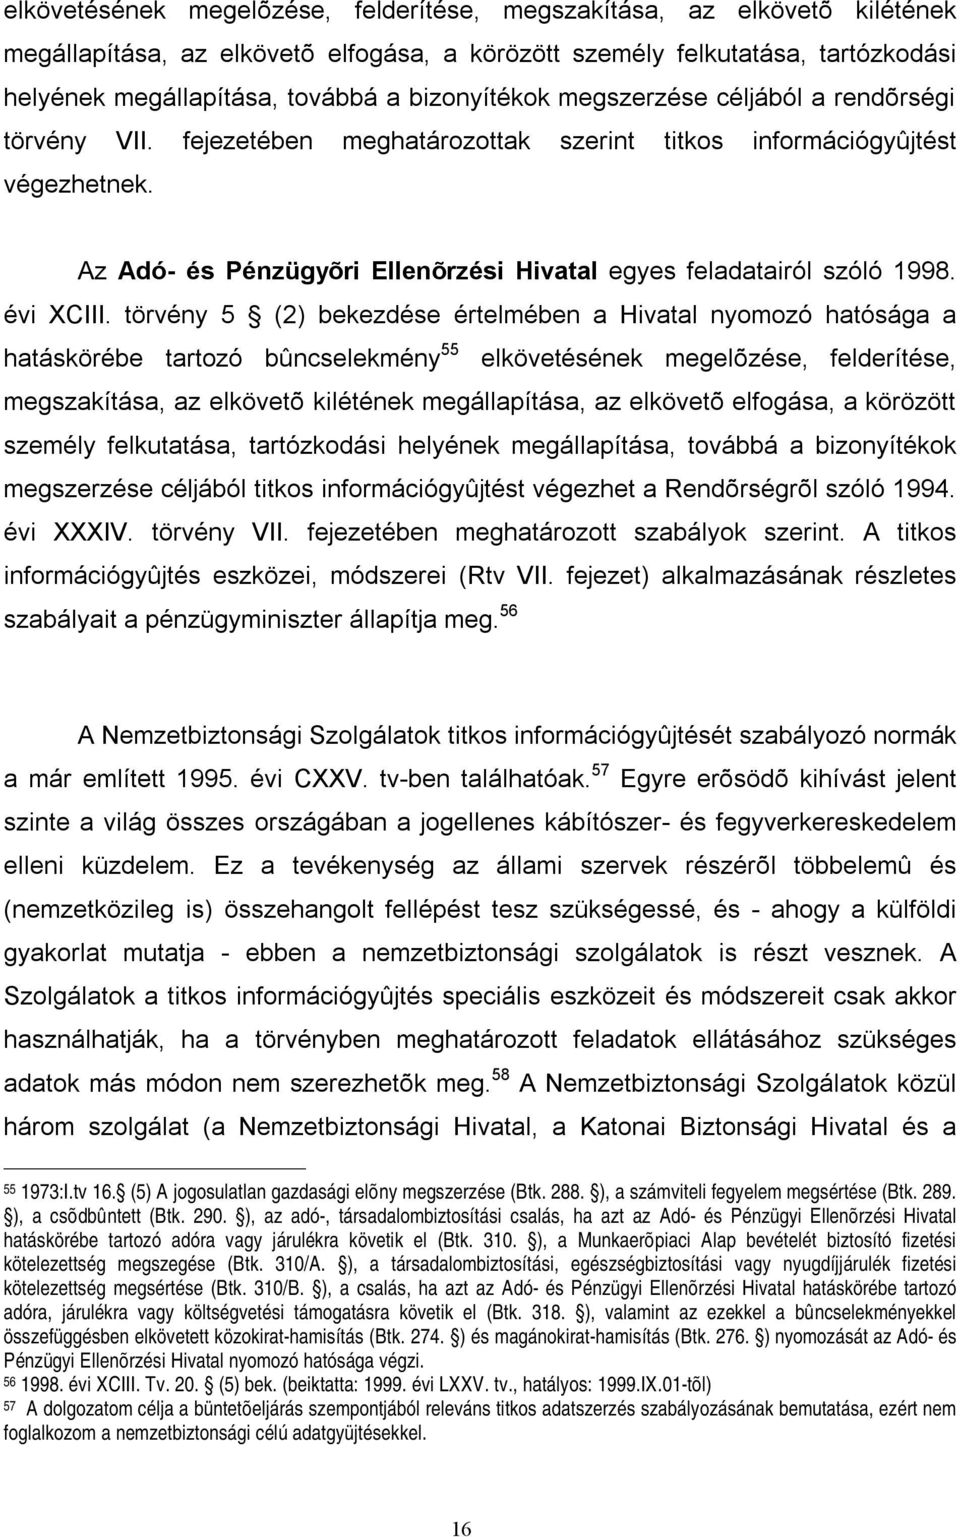 Az Adó- és Pénzügyõri Ellenõrzési Hivatal egyes feladatairól szóló 1998. évi XCIII.